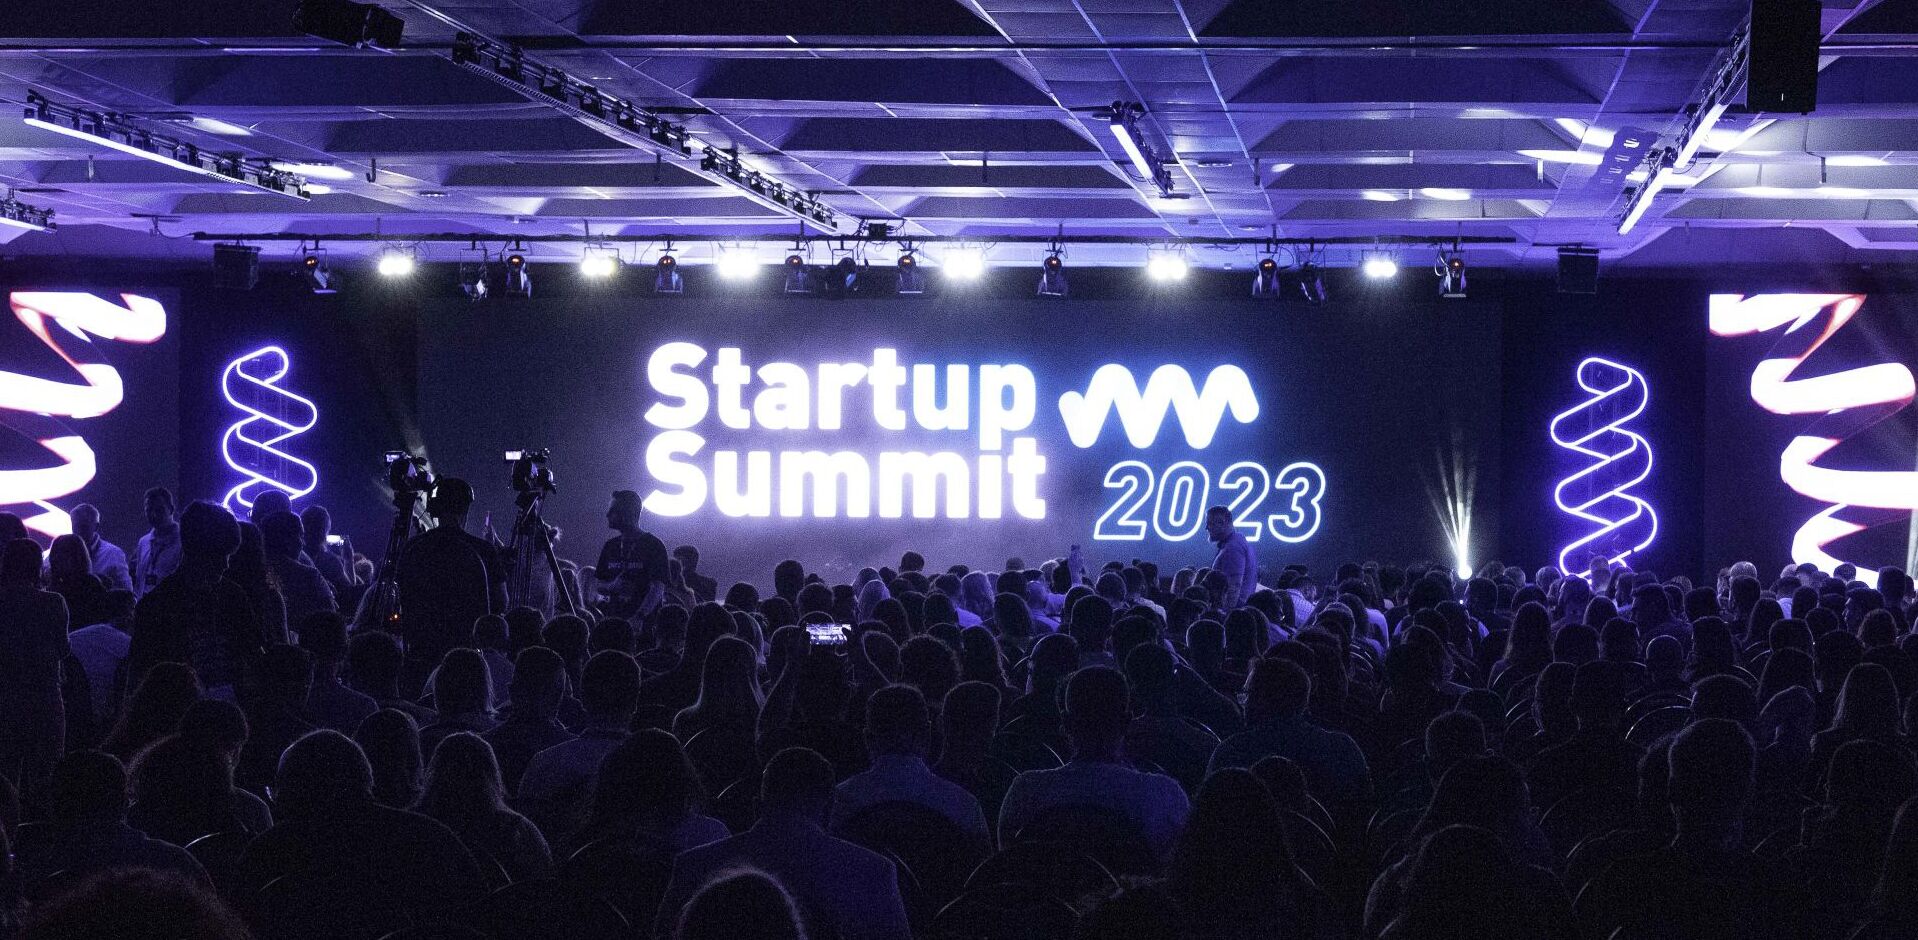 Imagem do palco do Startups Summit 2023, que contou com o apoio da Dialetto em sua divulgação